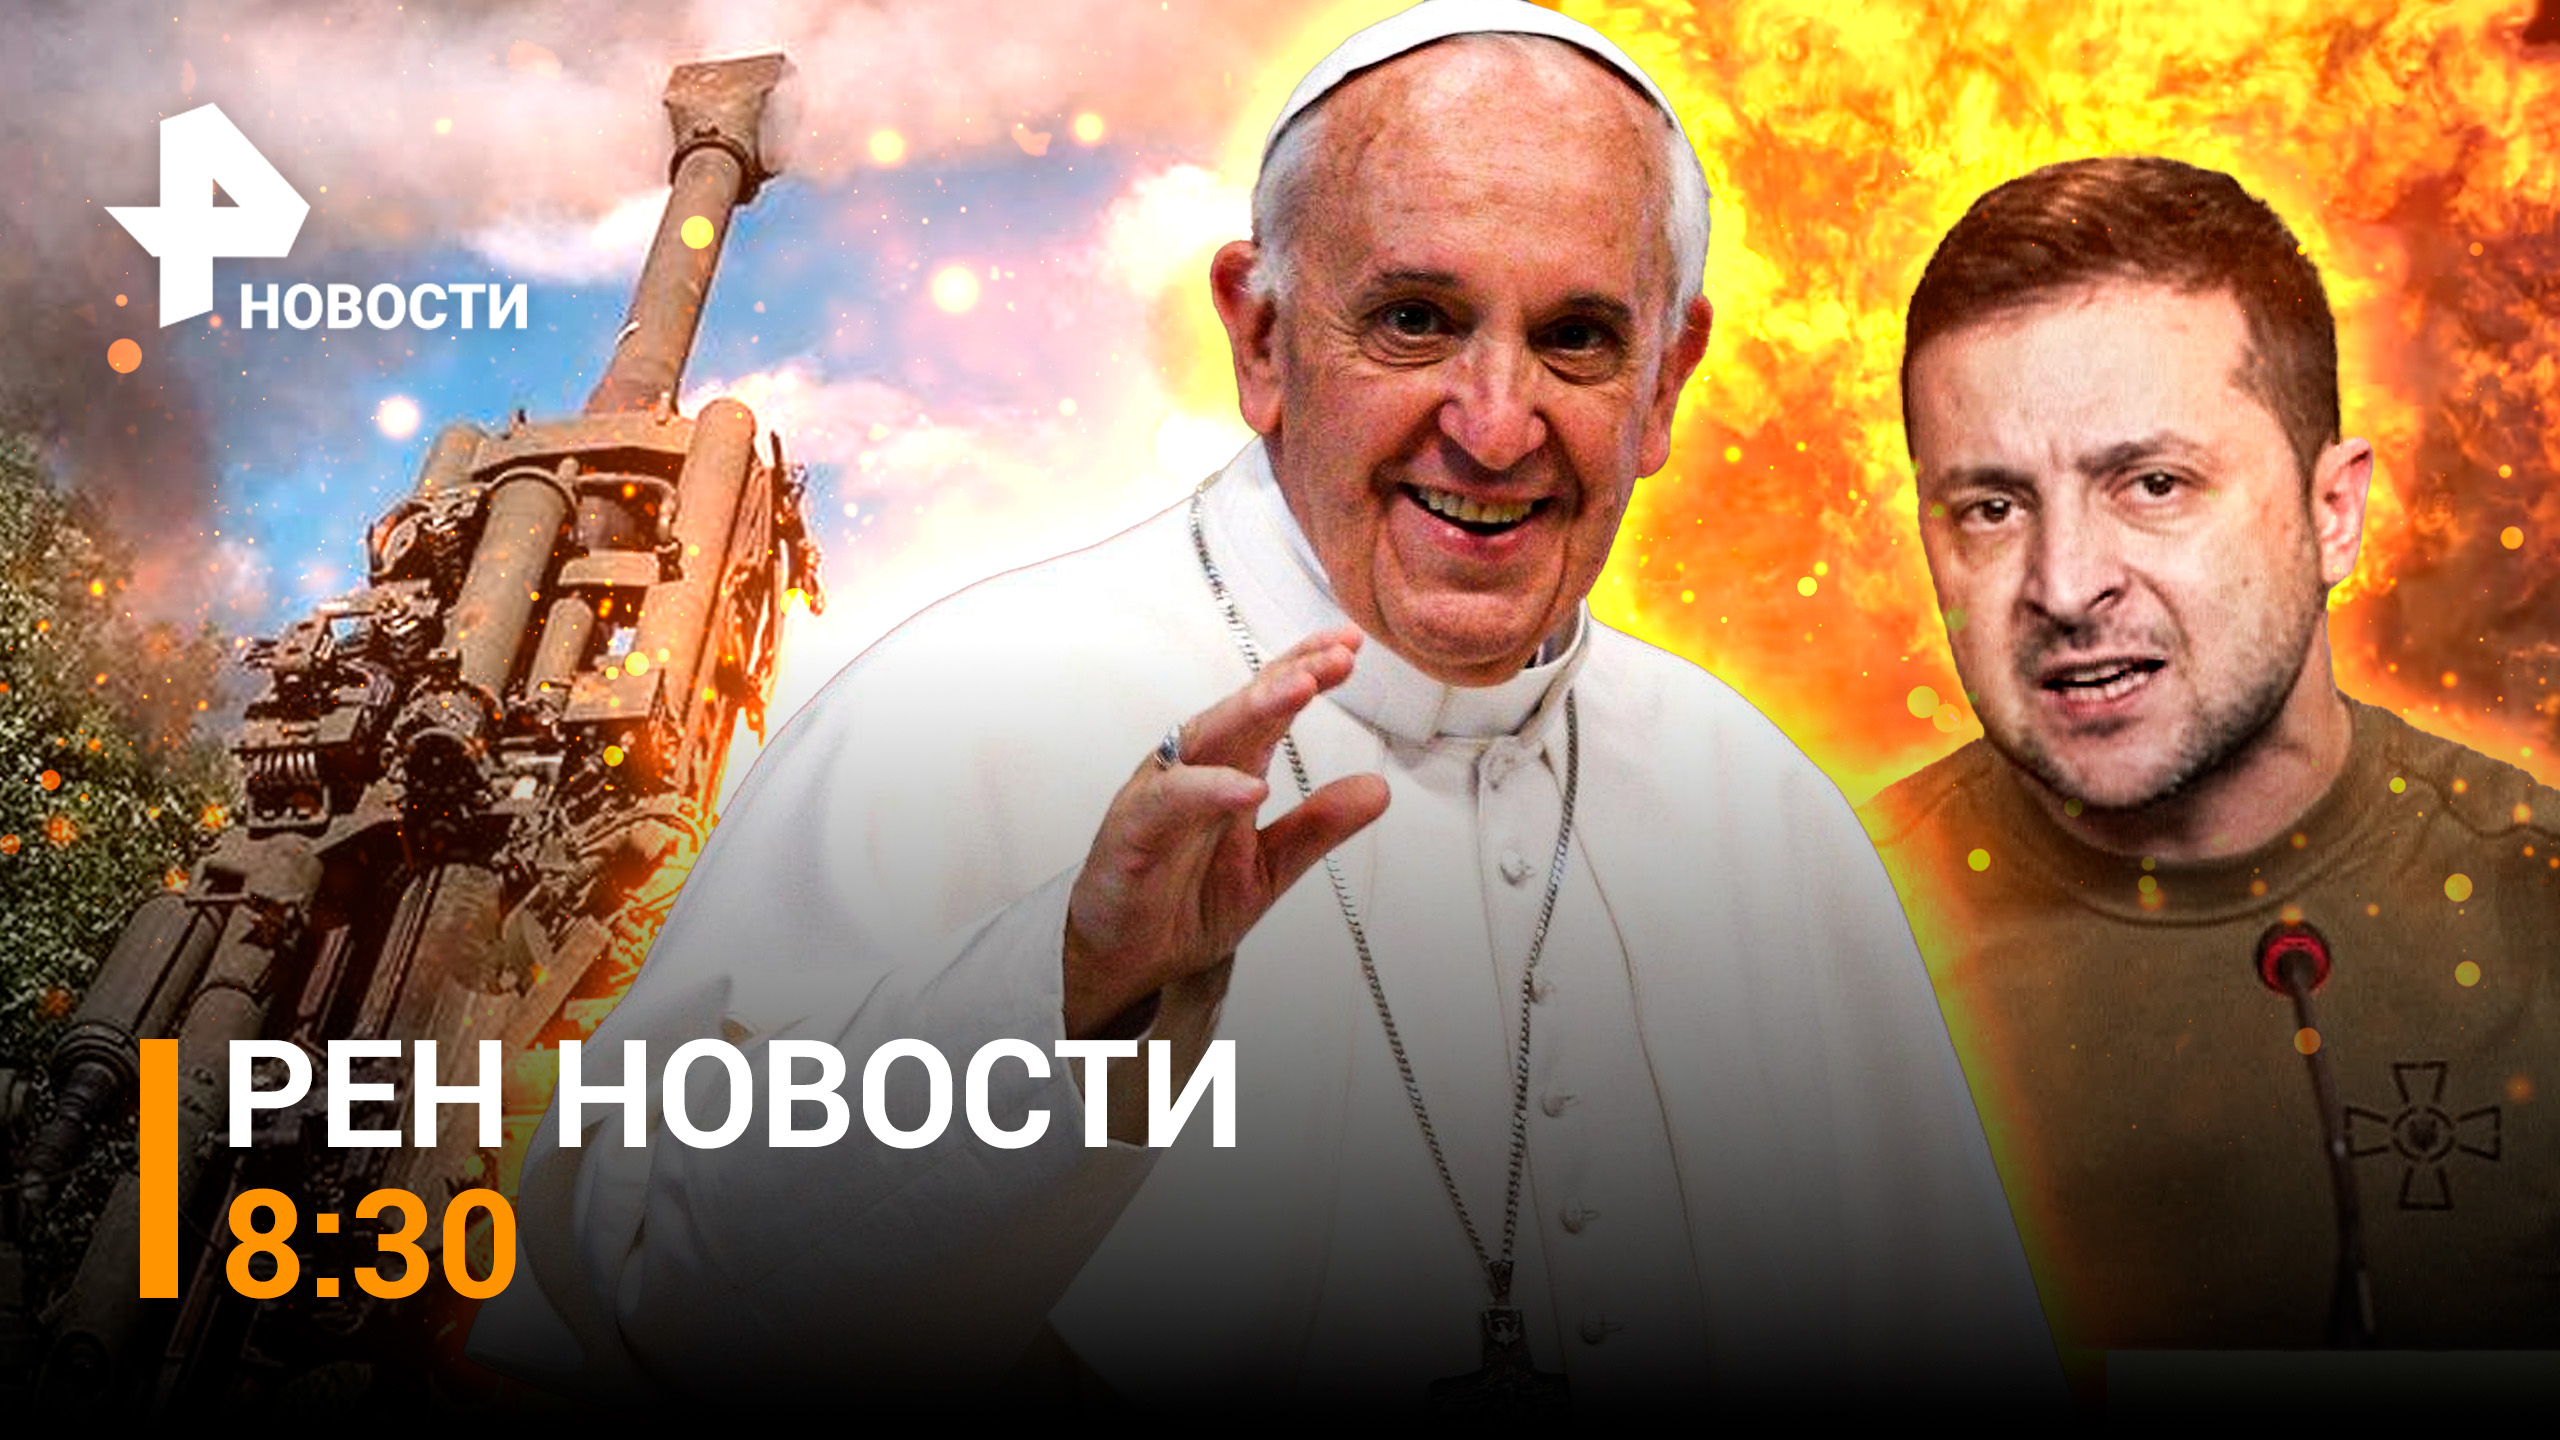 Наши бойцы выжигают ВСУ под Угледаром. Папа Римский вызвал гнев Украины / РЕН НОВОСТИ 8:30 29.08